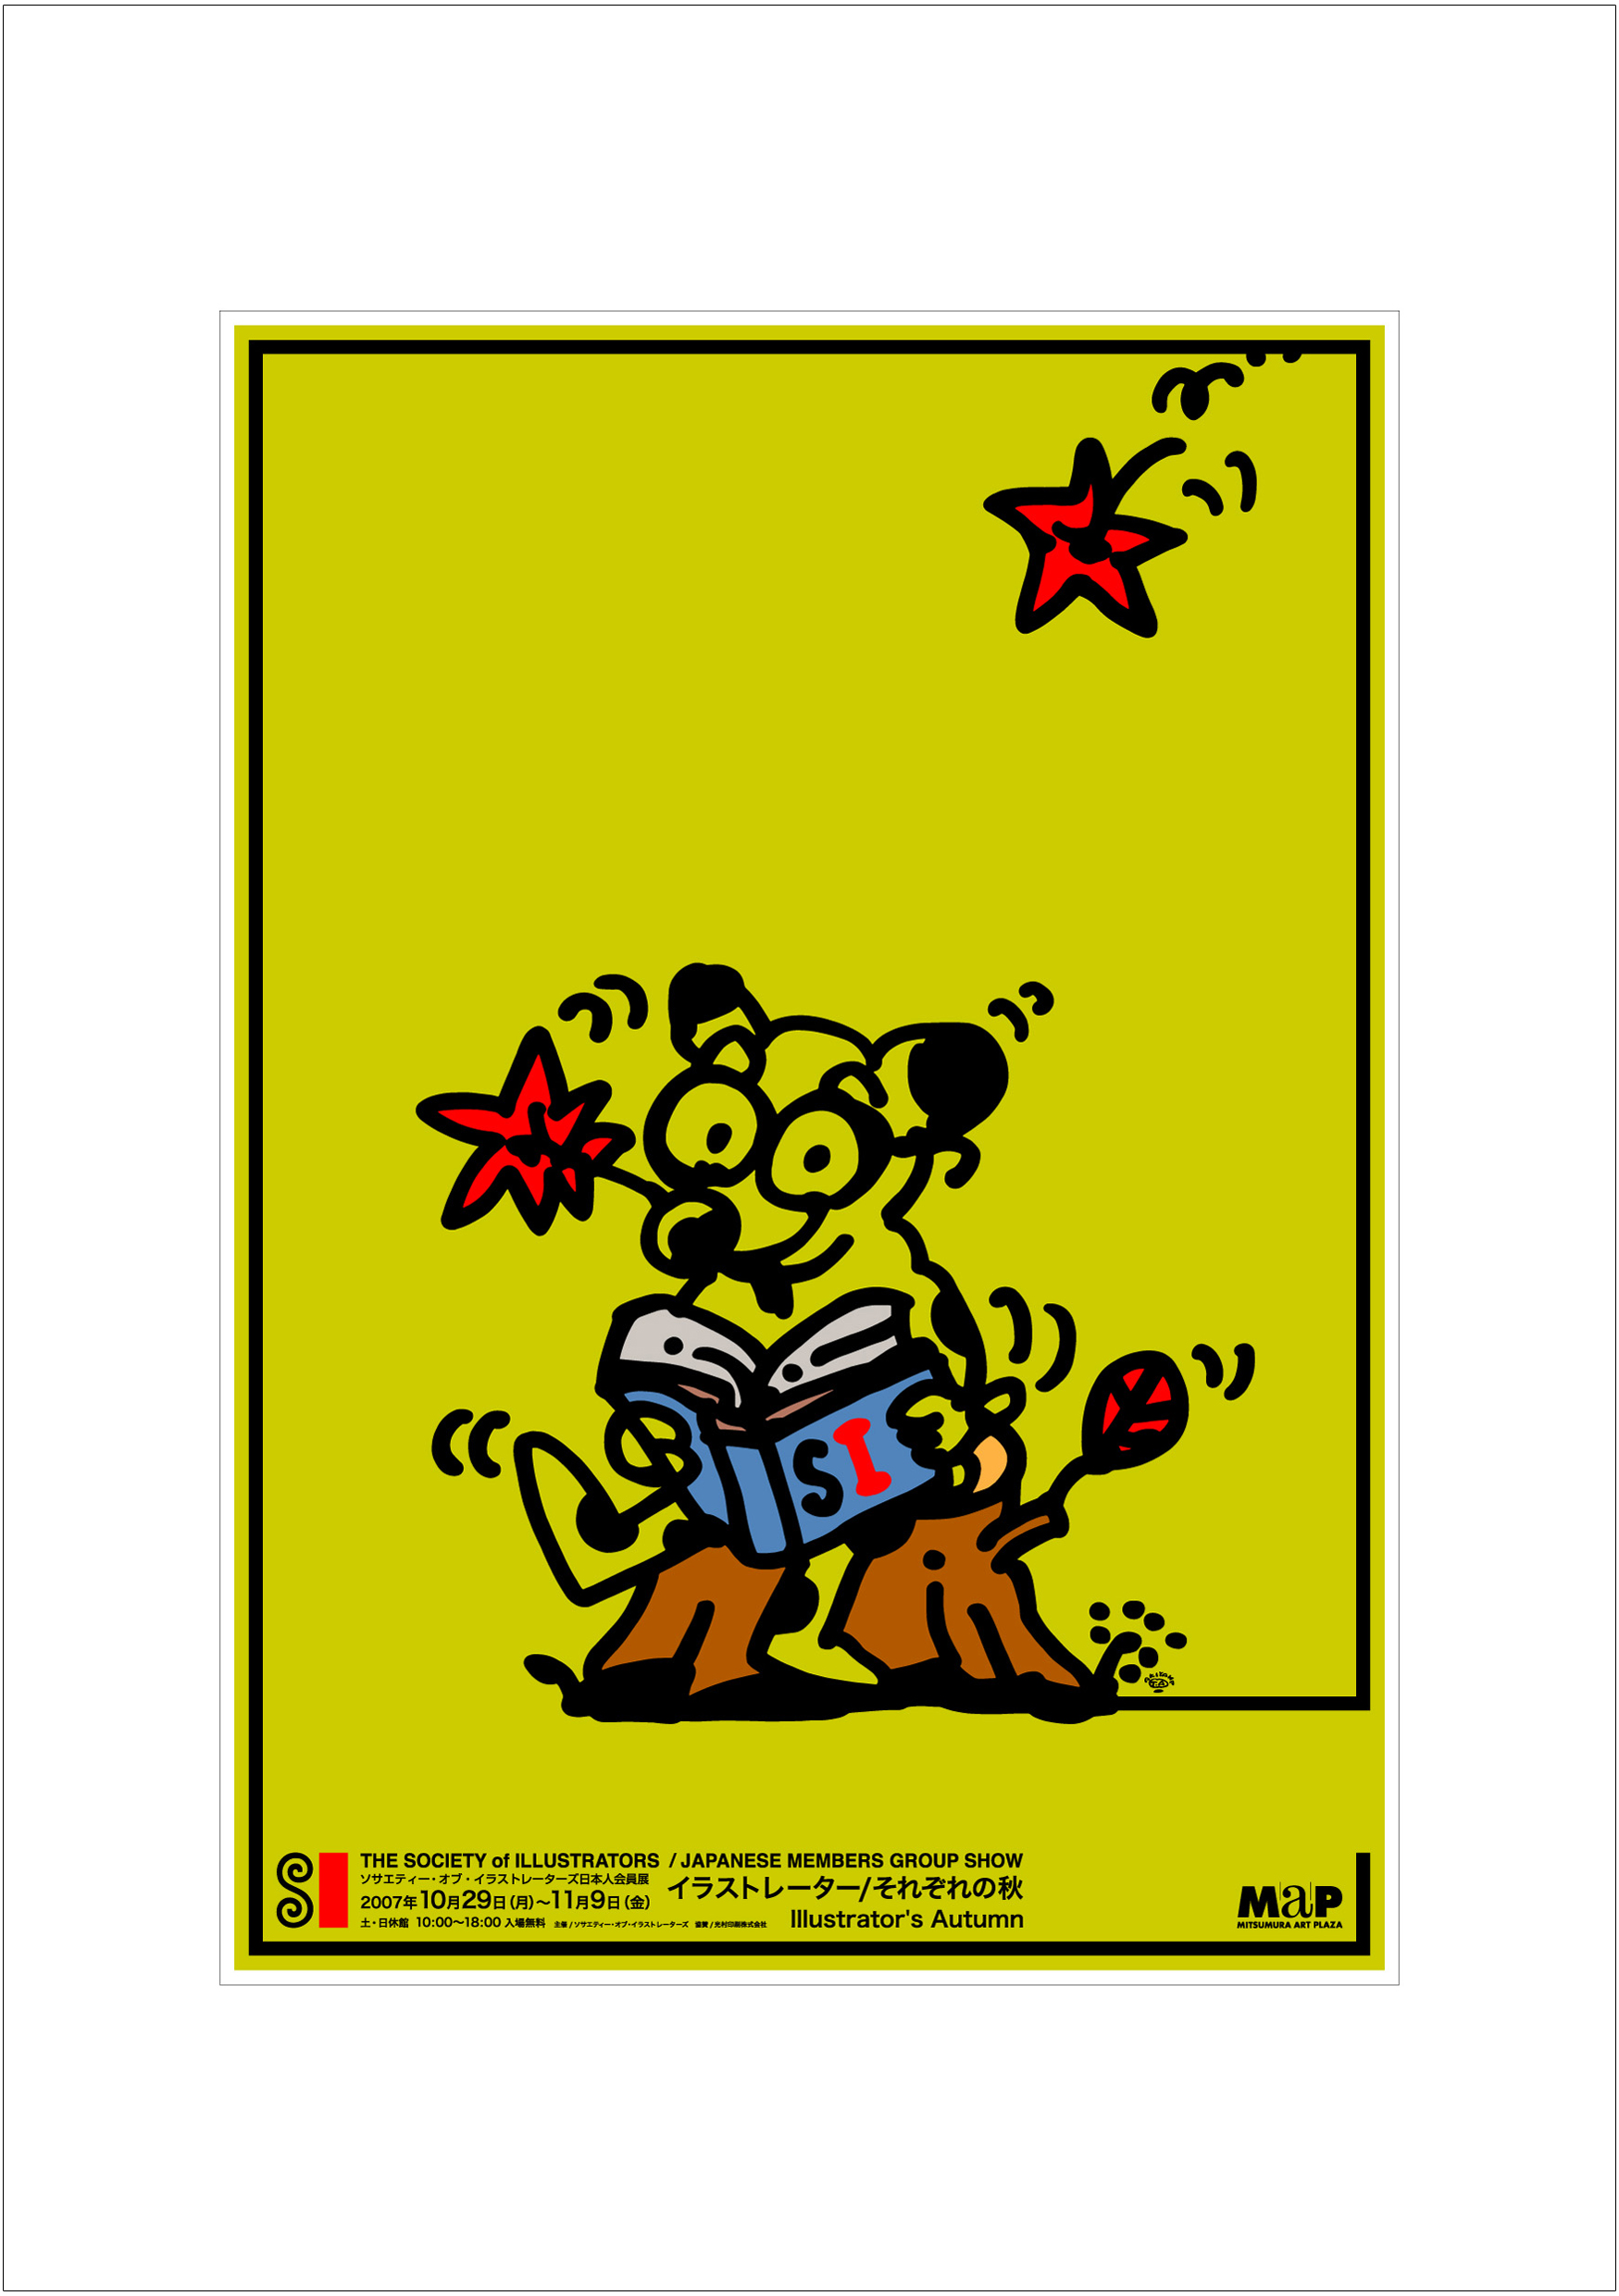 ポスターアーティスト秋山孝が2007年に制作したアートカード「アートカード ポスター 2007 13」